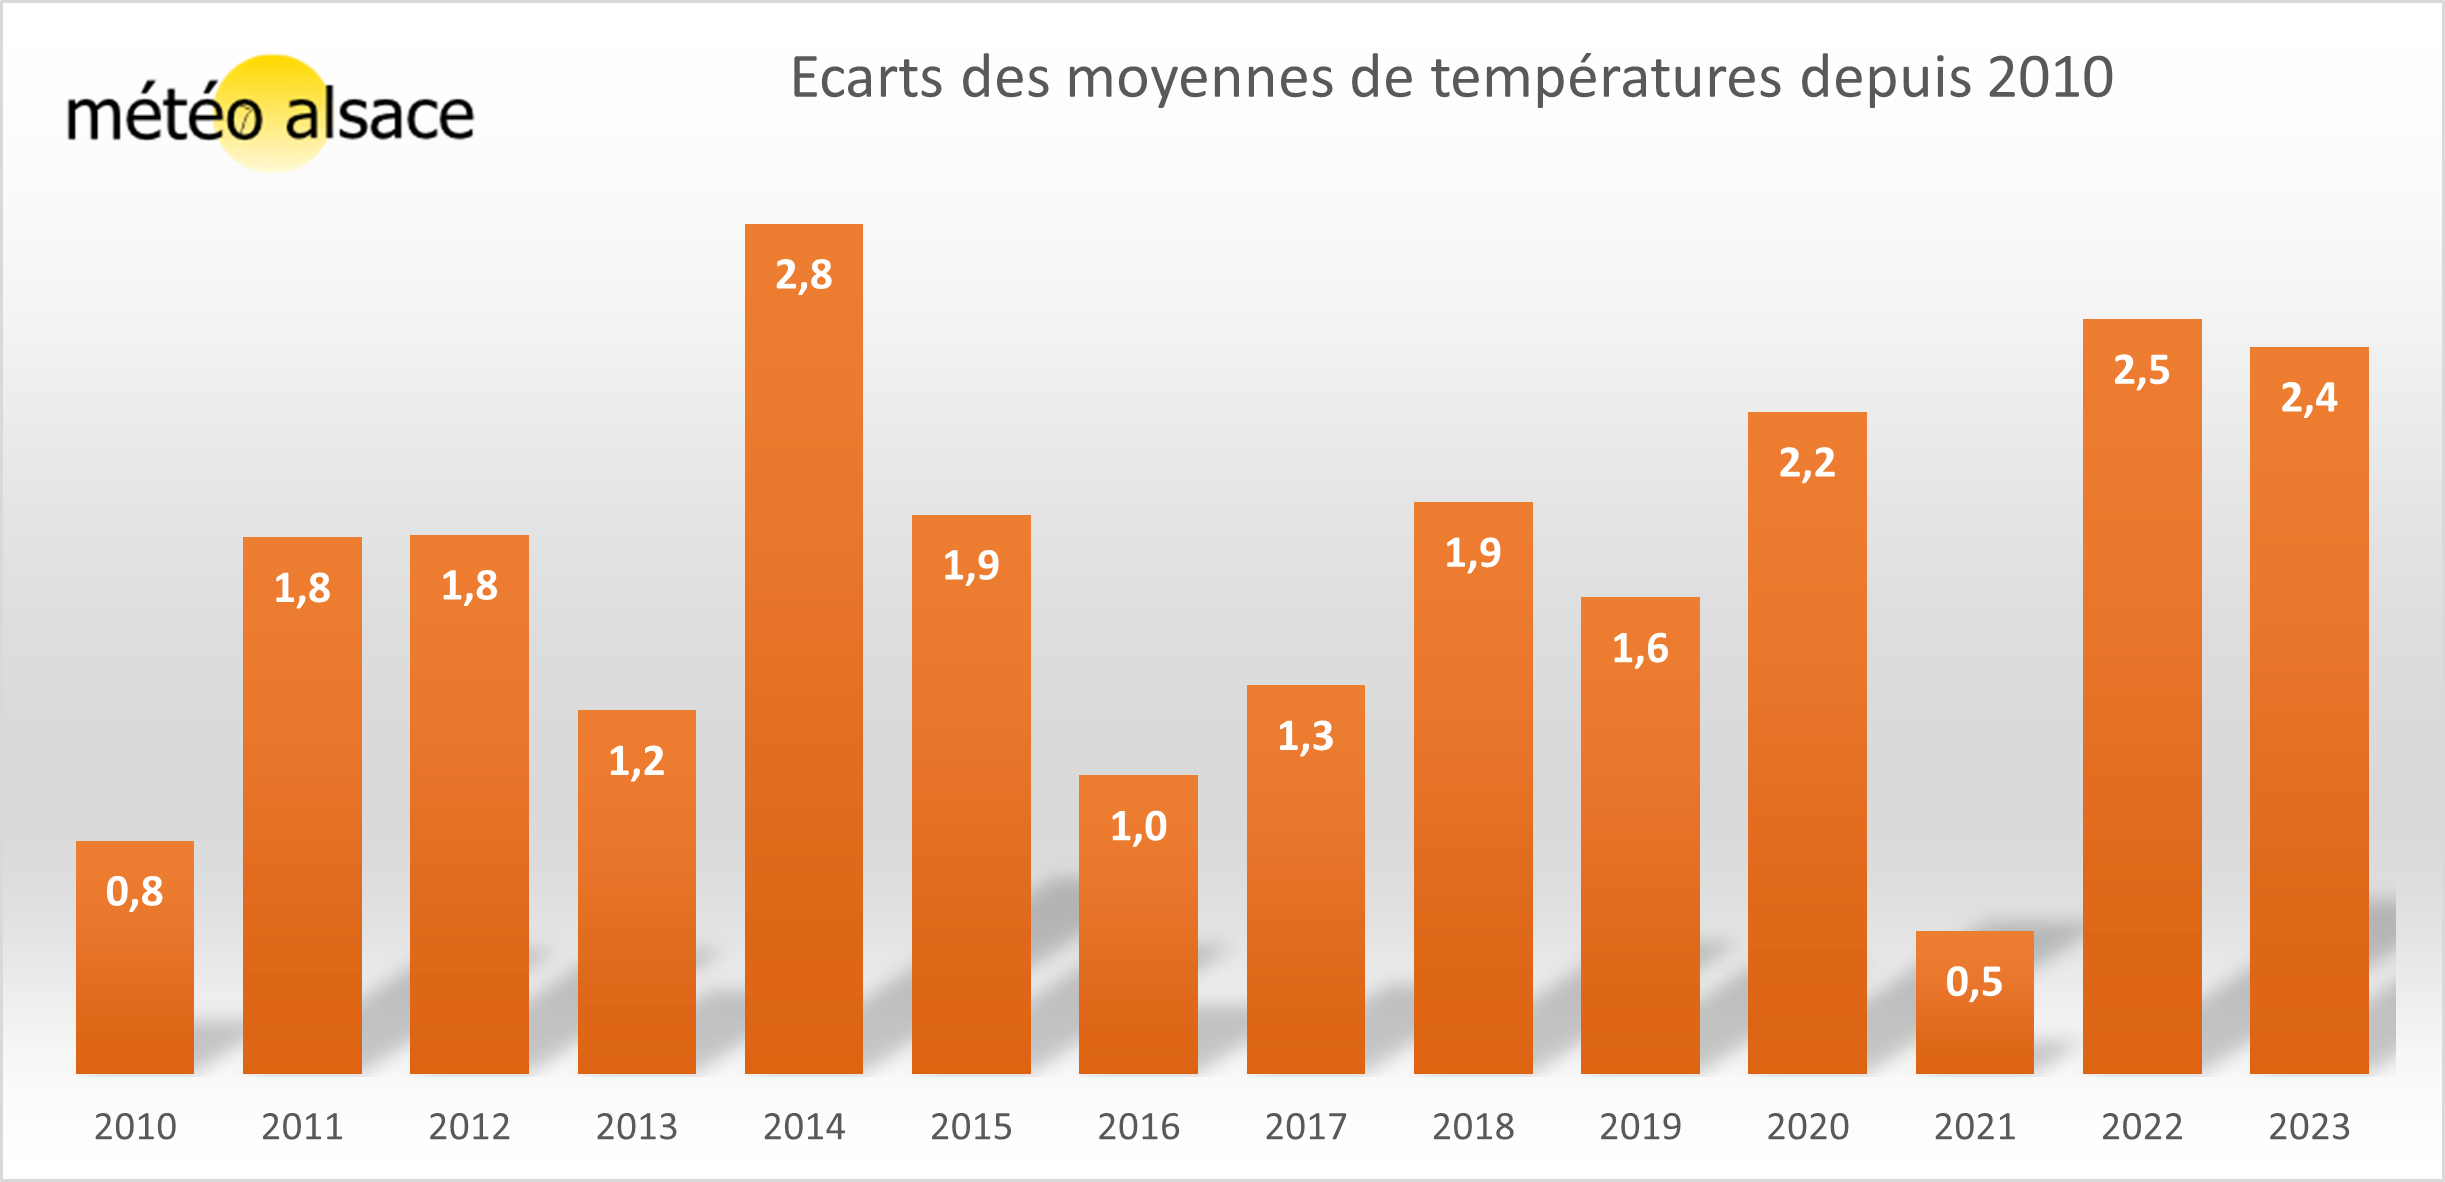 Les anomalies de températures depuis 2010